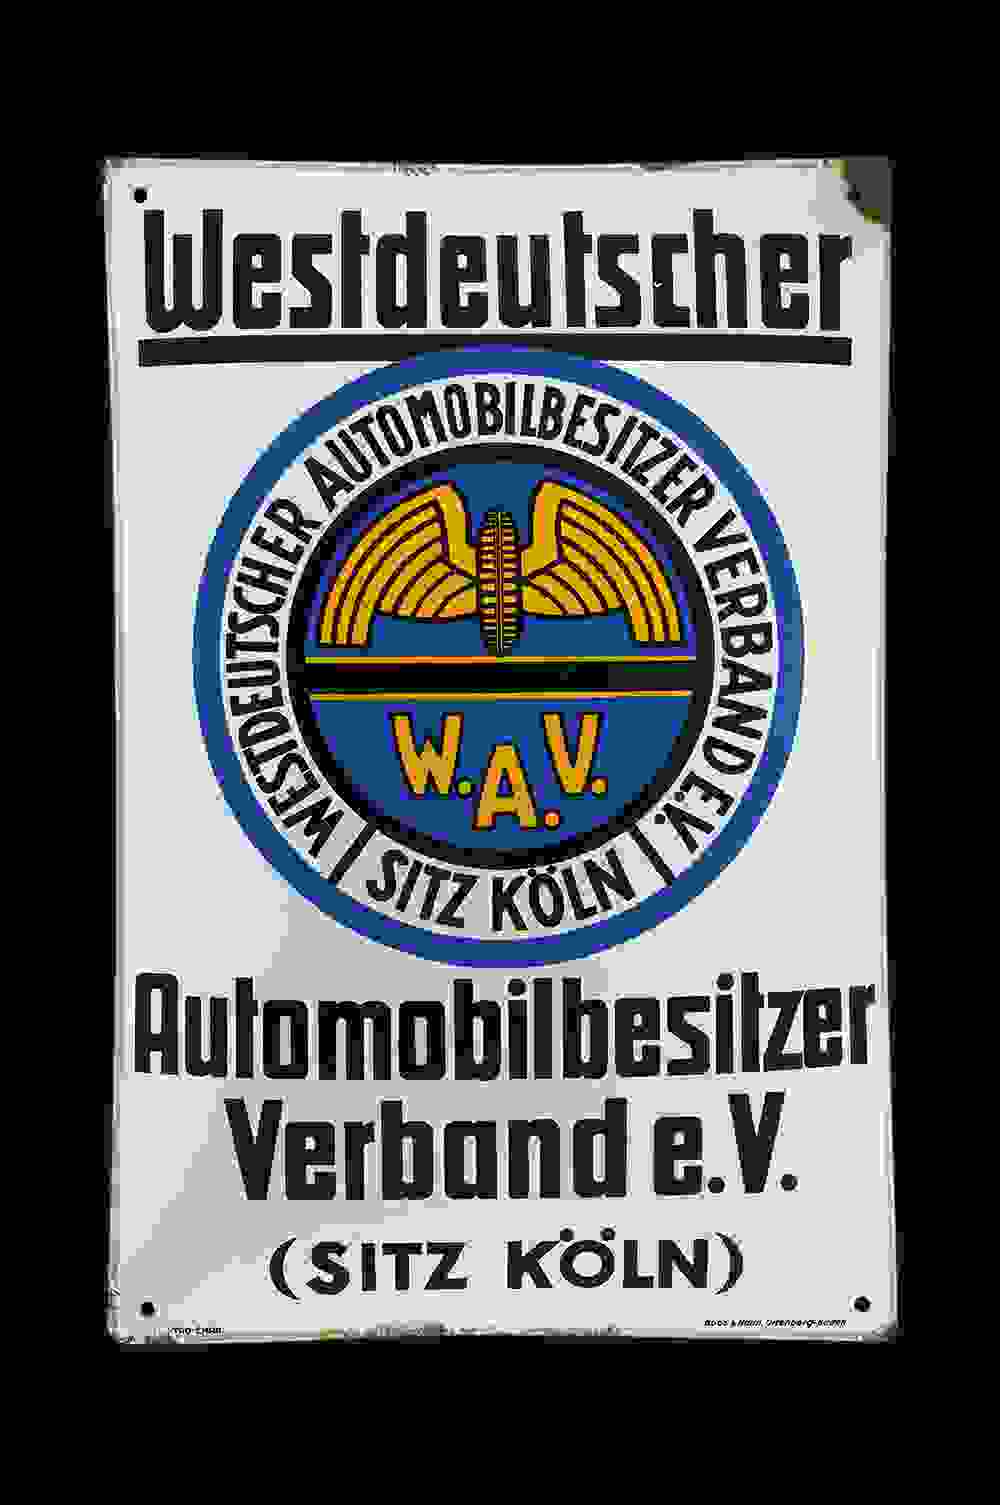 W.A.V. Westdeutscher Automobilbesitzer Verband 